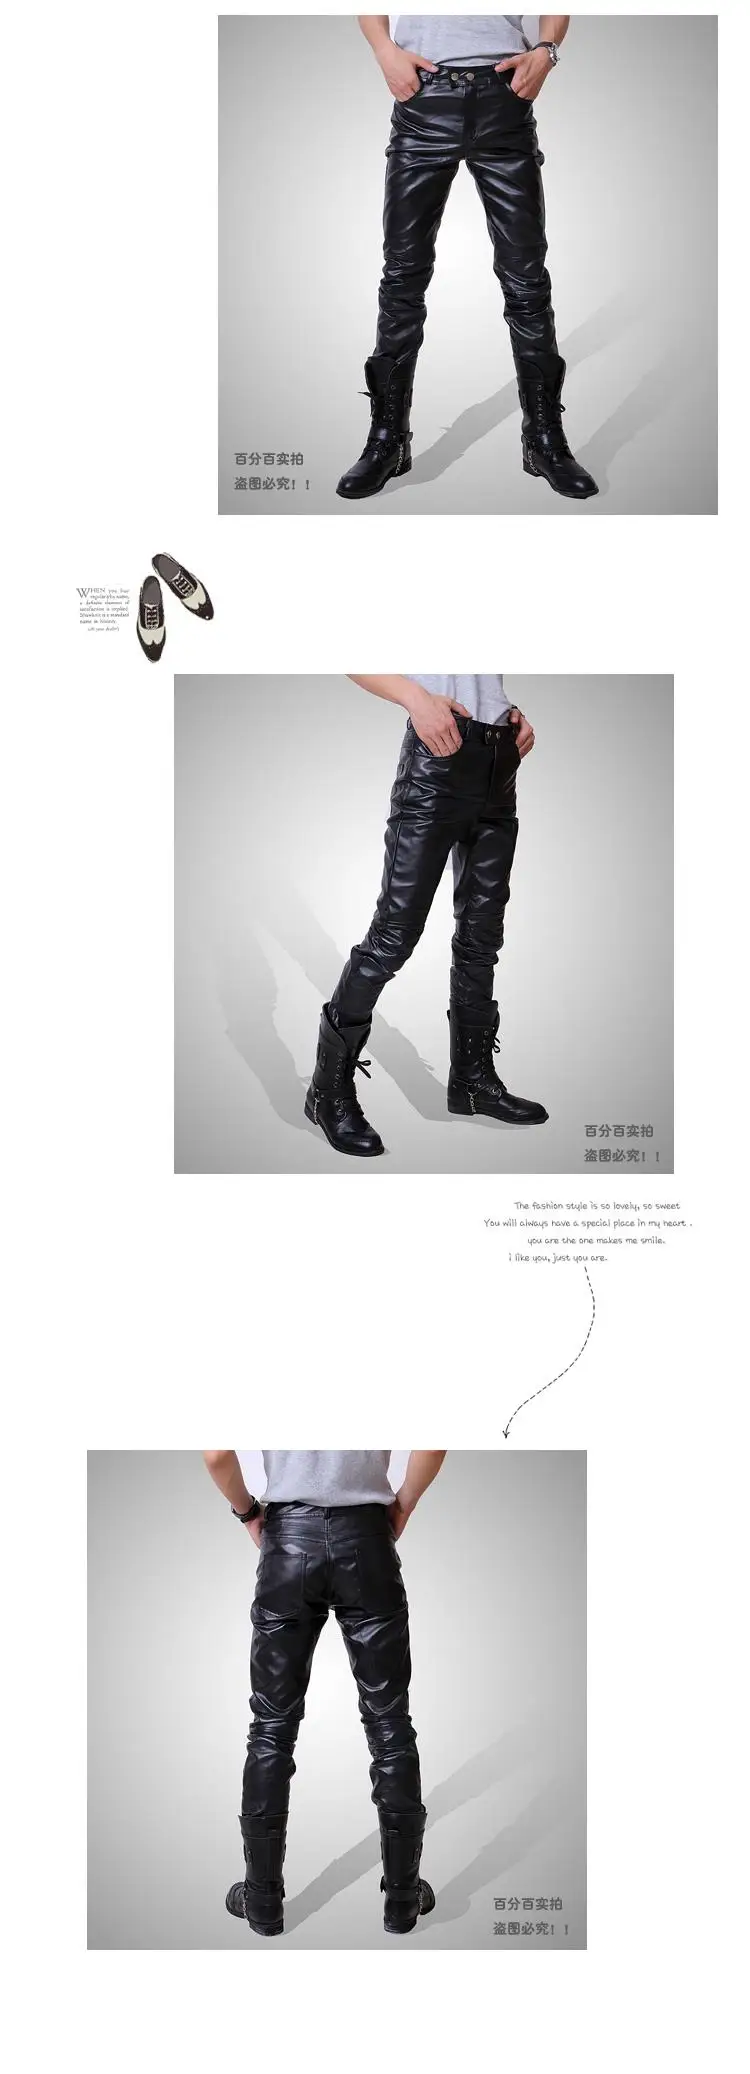 2018 хип-хоп мужские кожаные штаны Искусственная Кожа PU Материал 3 цвета мотоцикл Тощий Искусственная кожа Повседневные штаны для мужчин